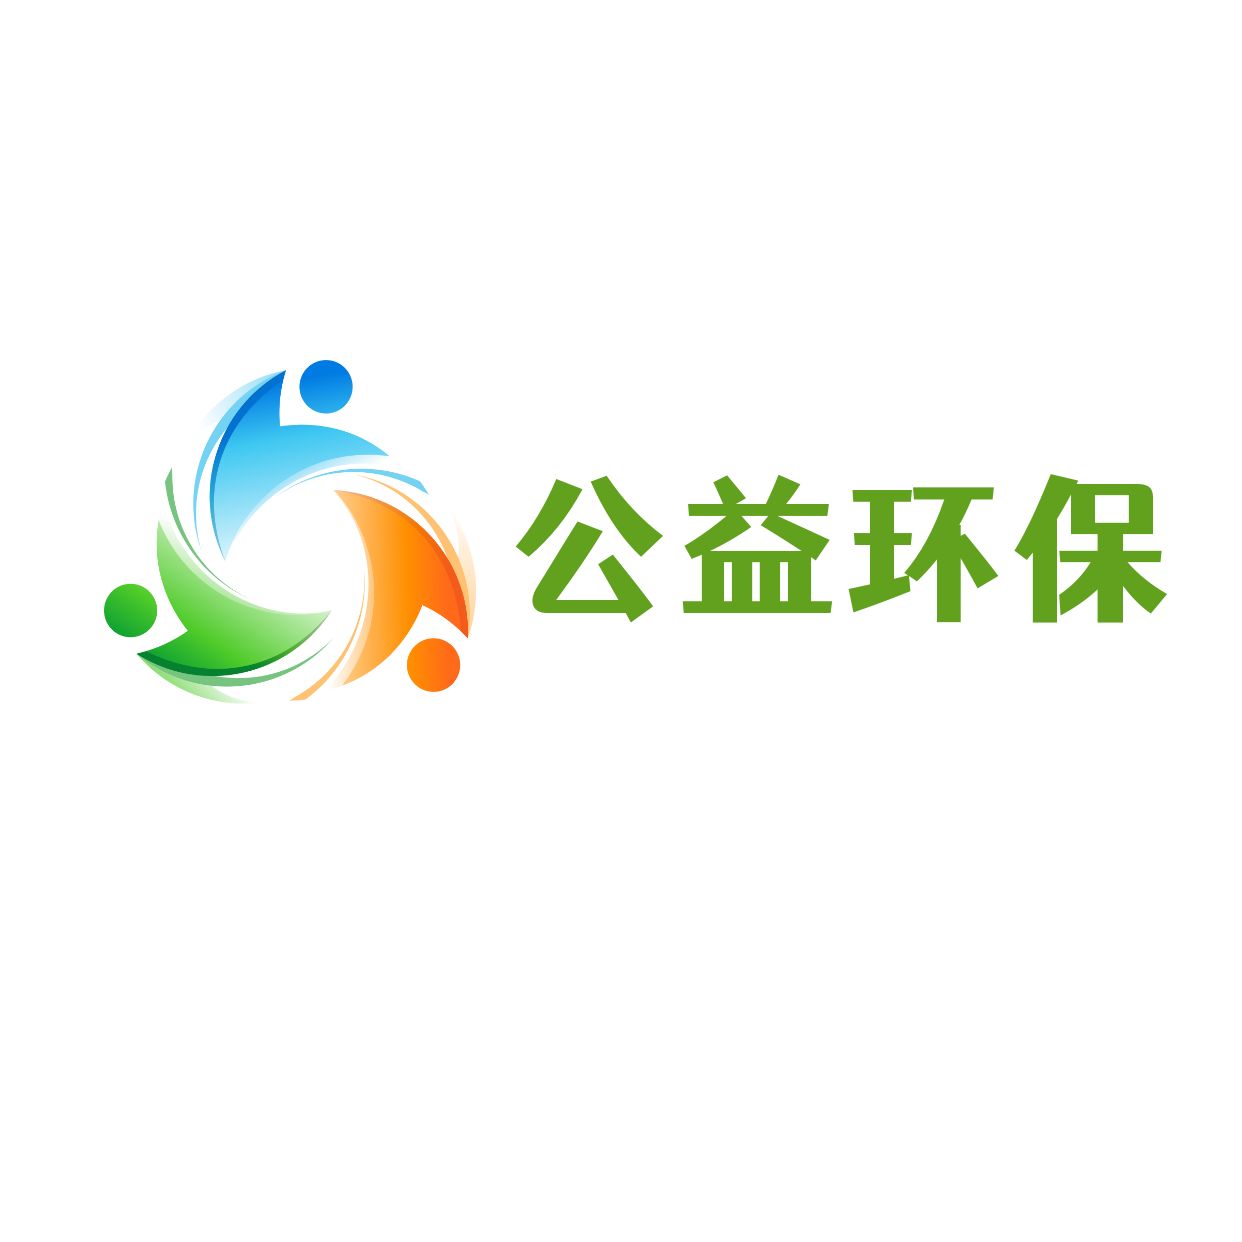 公益环保海洋保护logo 2